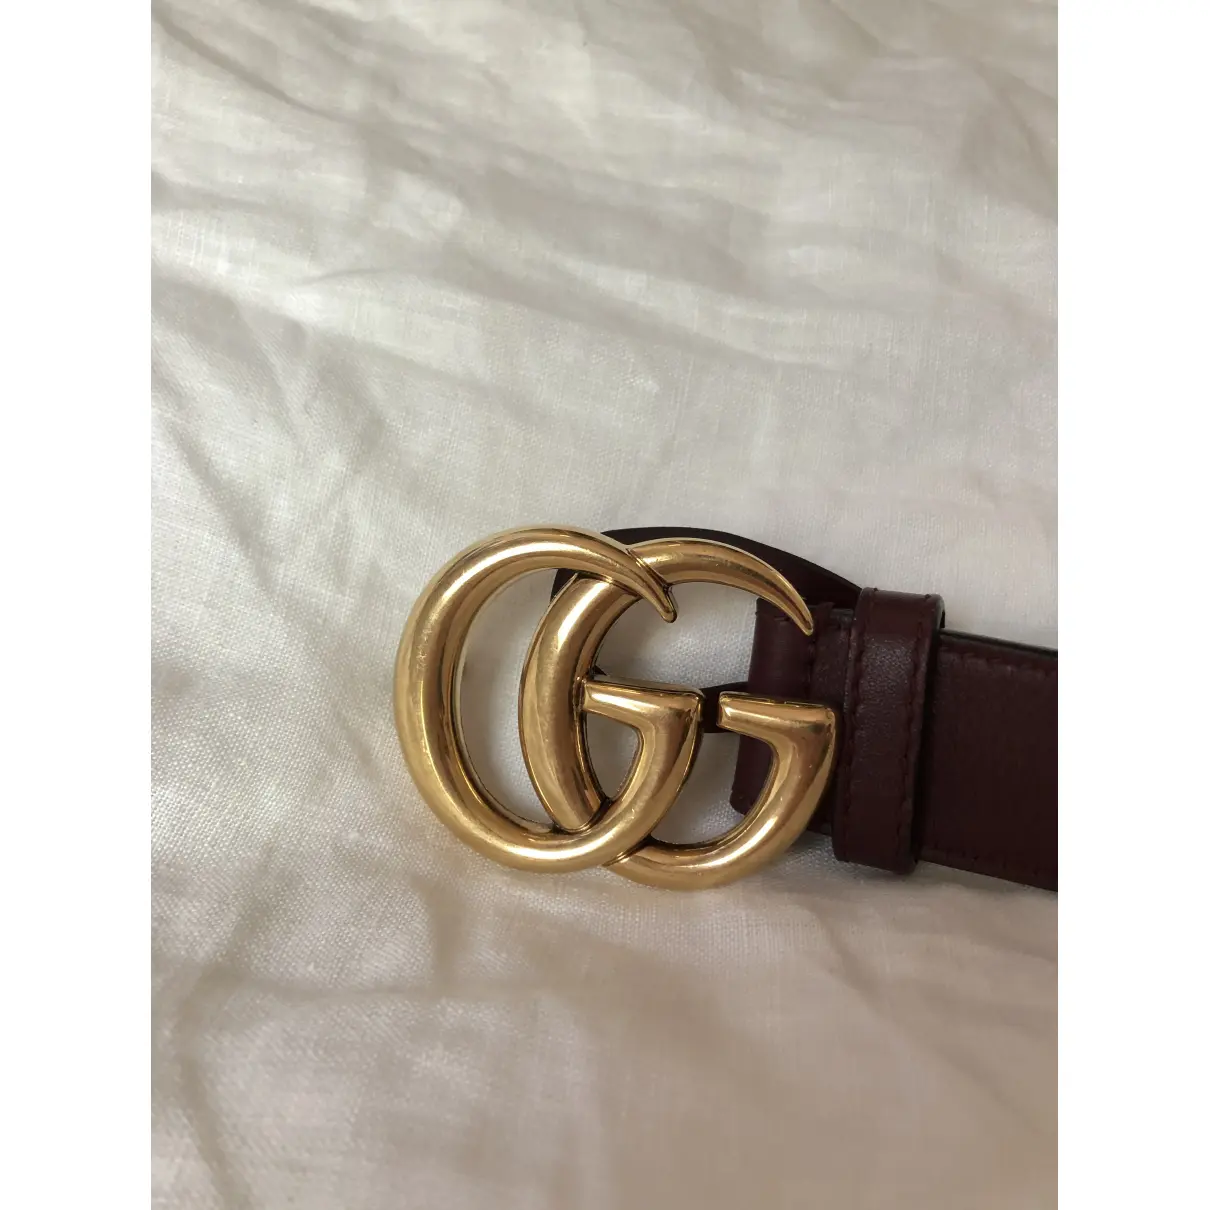 Luxury Gucci Belts Women